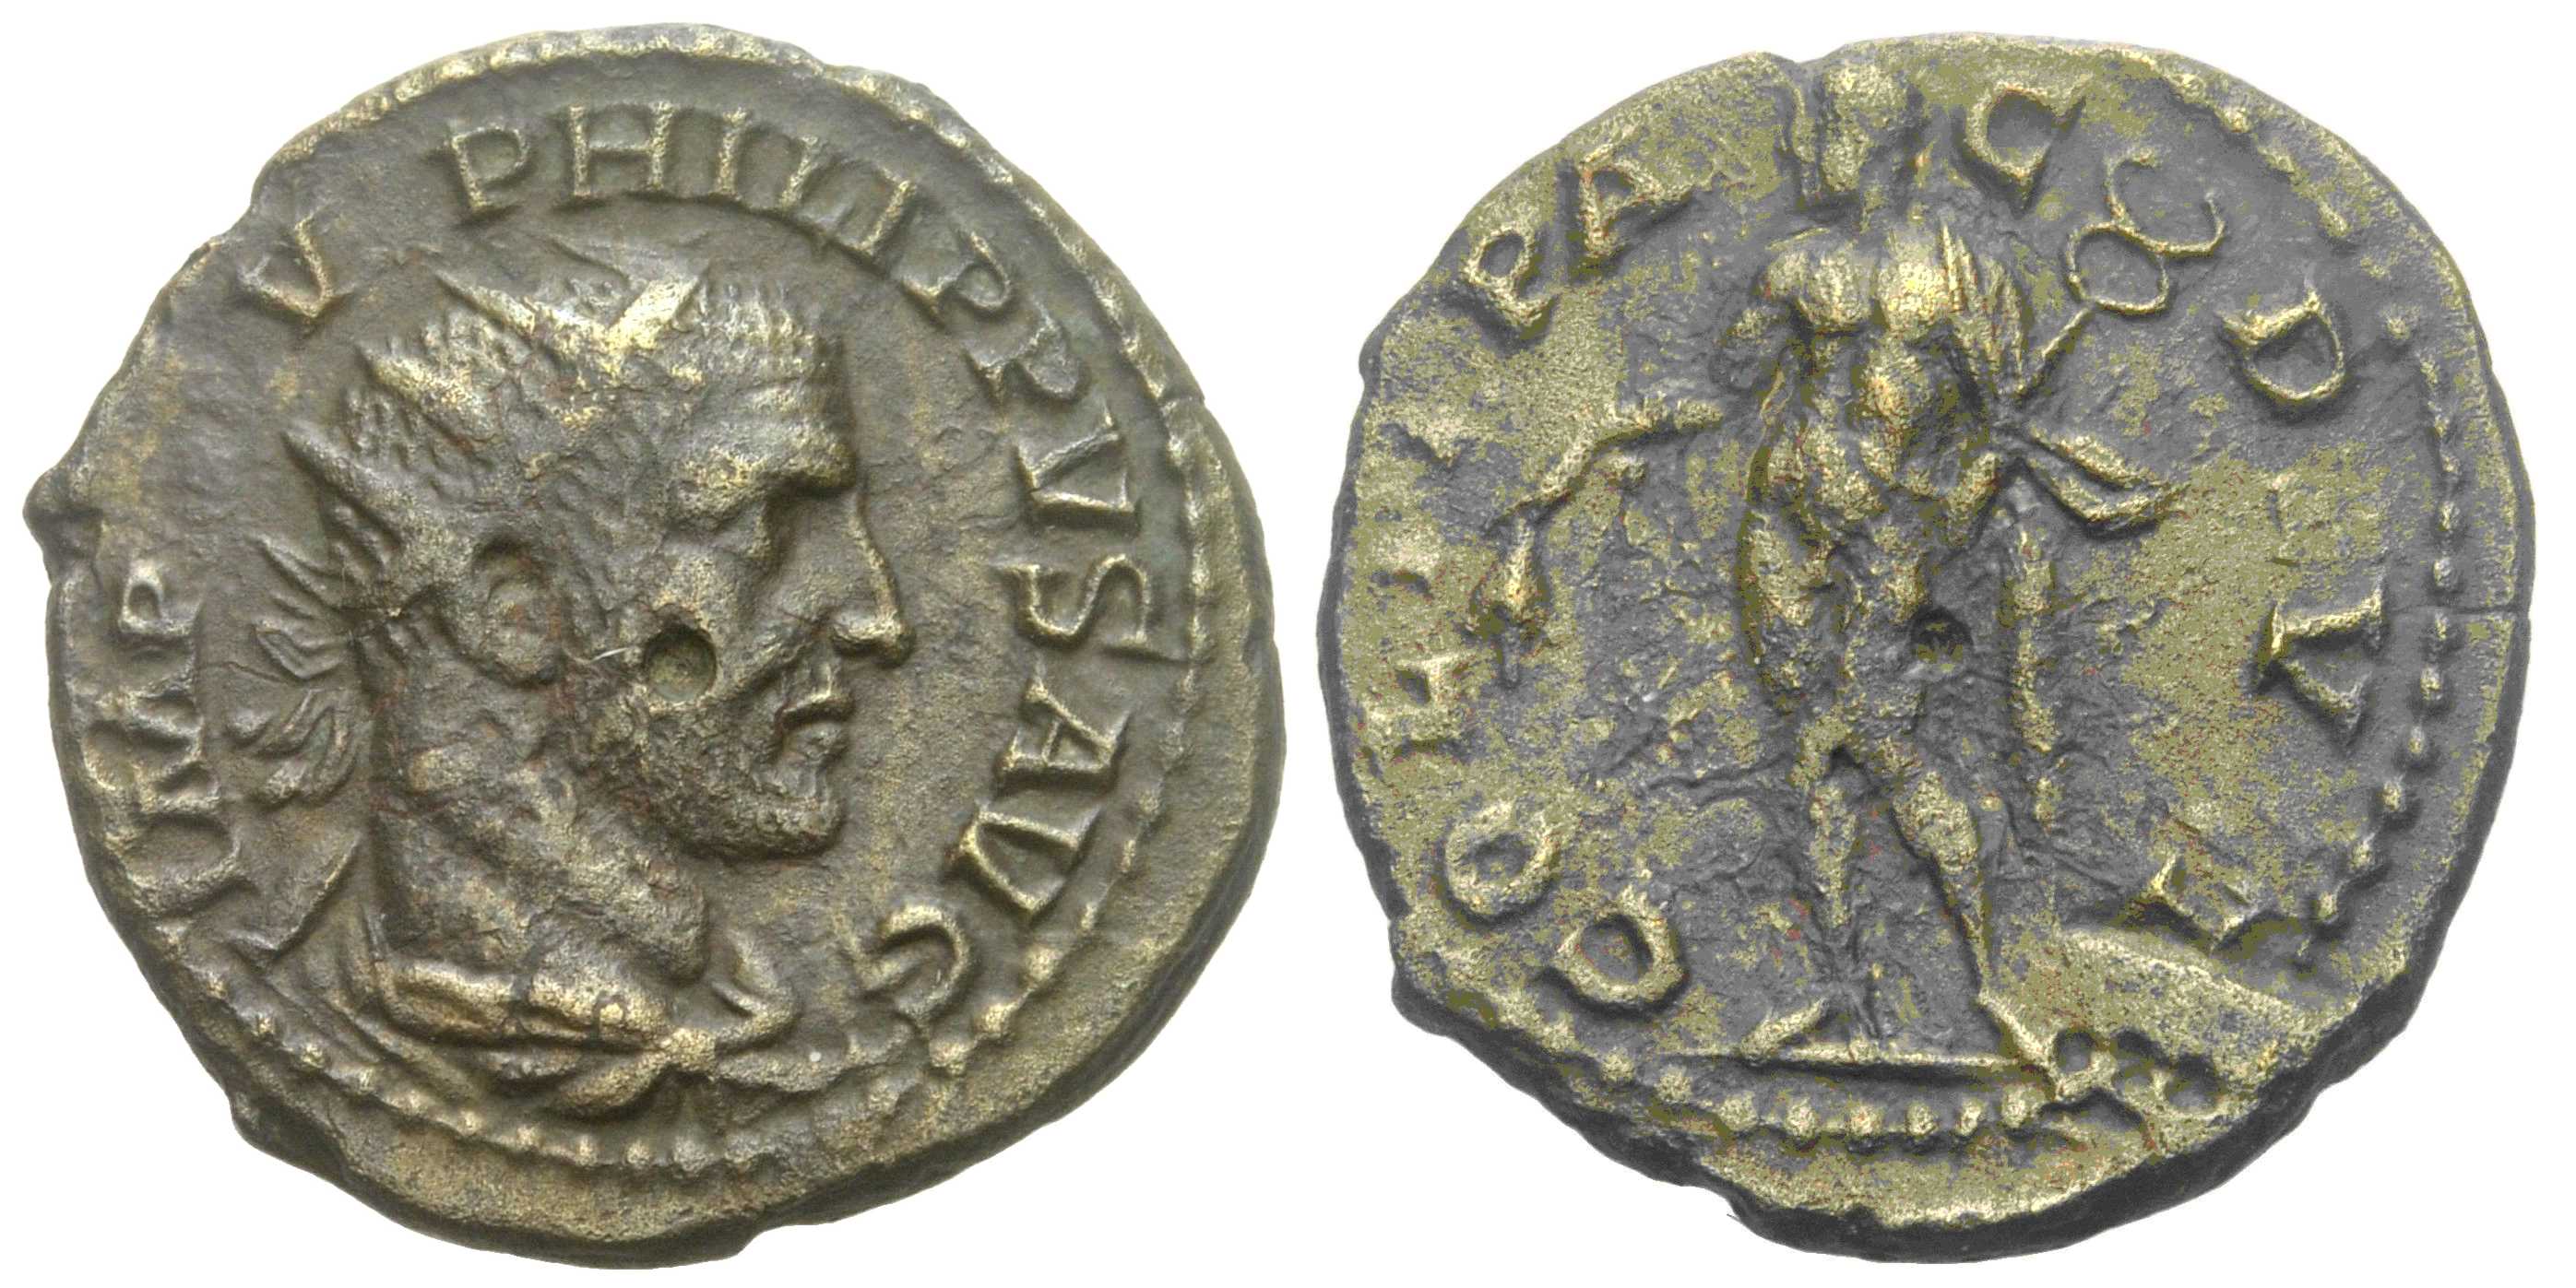 5623 Deultum Thracia Philippus I AE